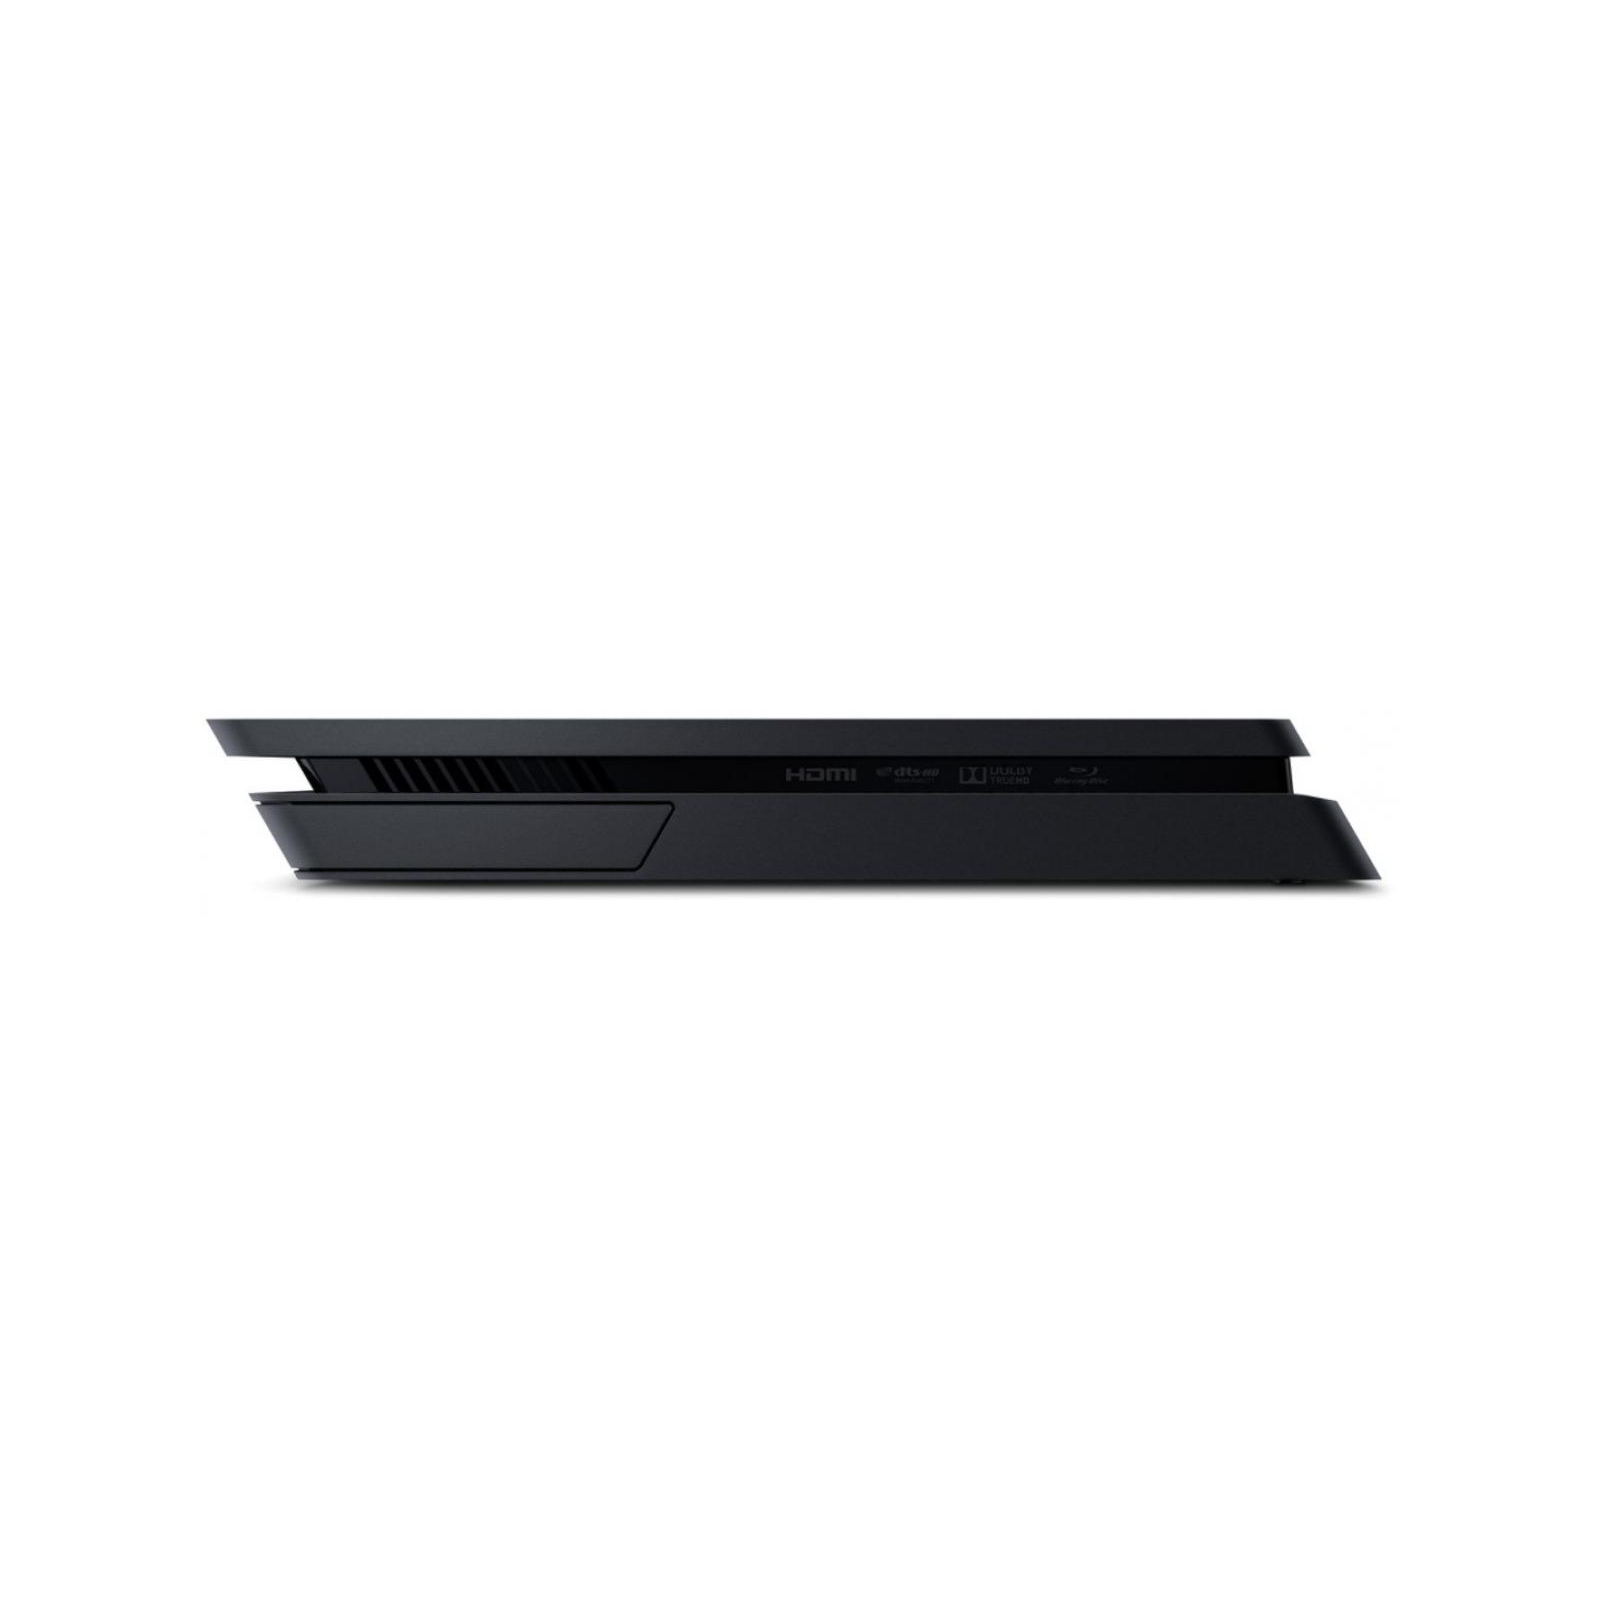 Игровая консоль Sony PlayStation 4 Slim 500 Gb Black (HZD+GTS+UC4+PSPlus 3М) (9395270) изображение 6